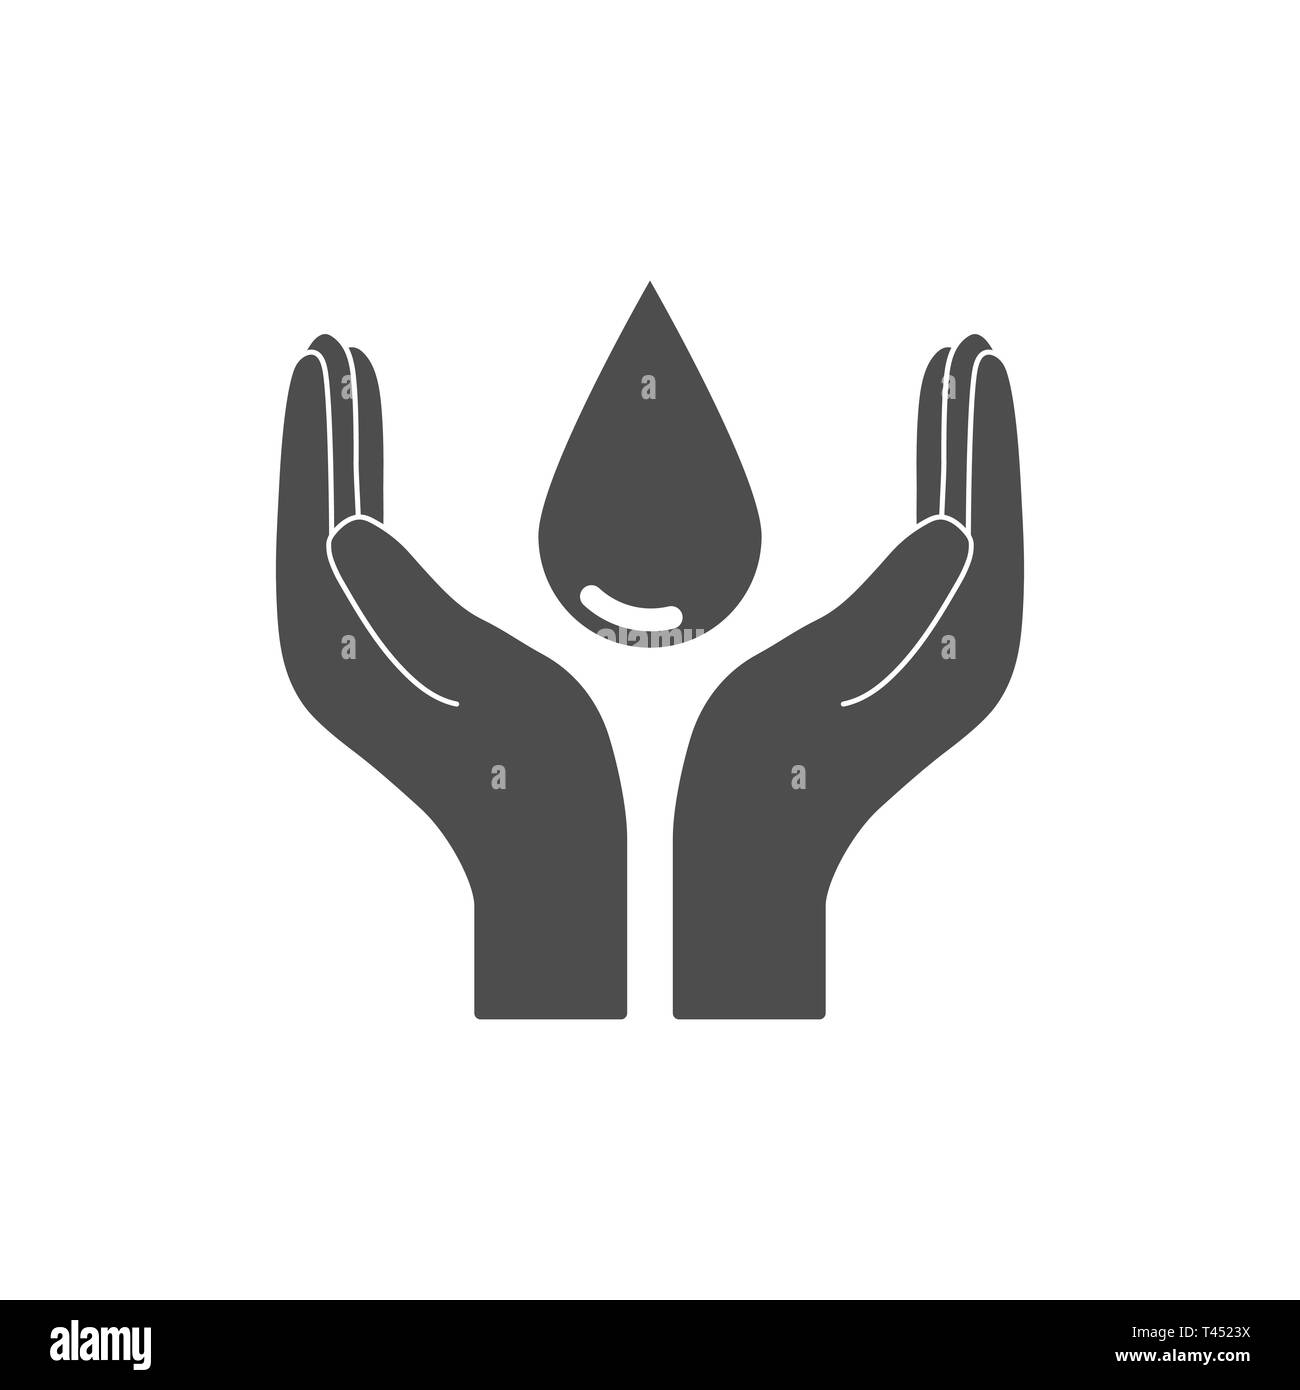 Wasser sparen. Hand hält Wasser tropfen Symbol. Vector Illustration, flache Bauform. Stock Vektor